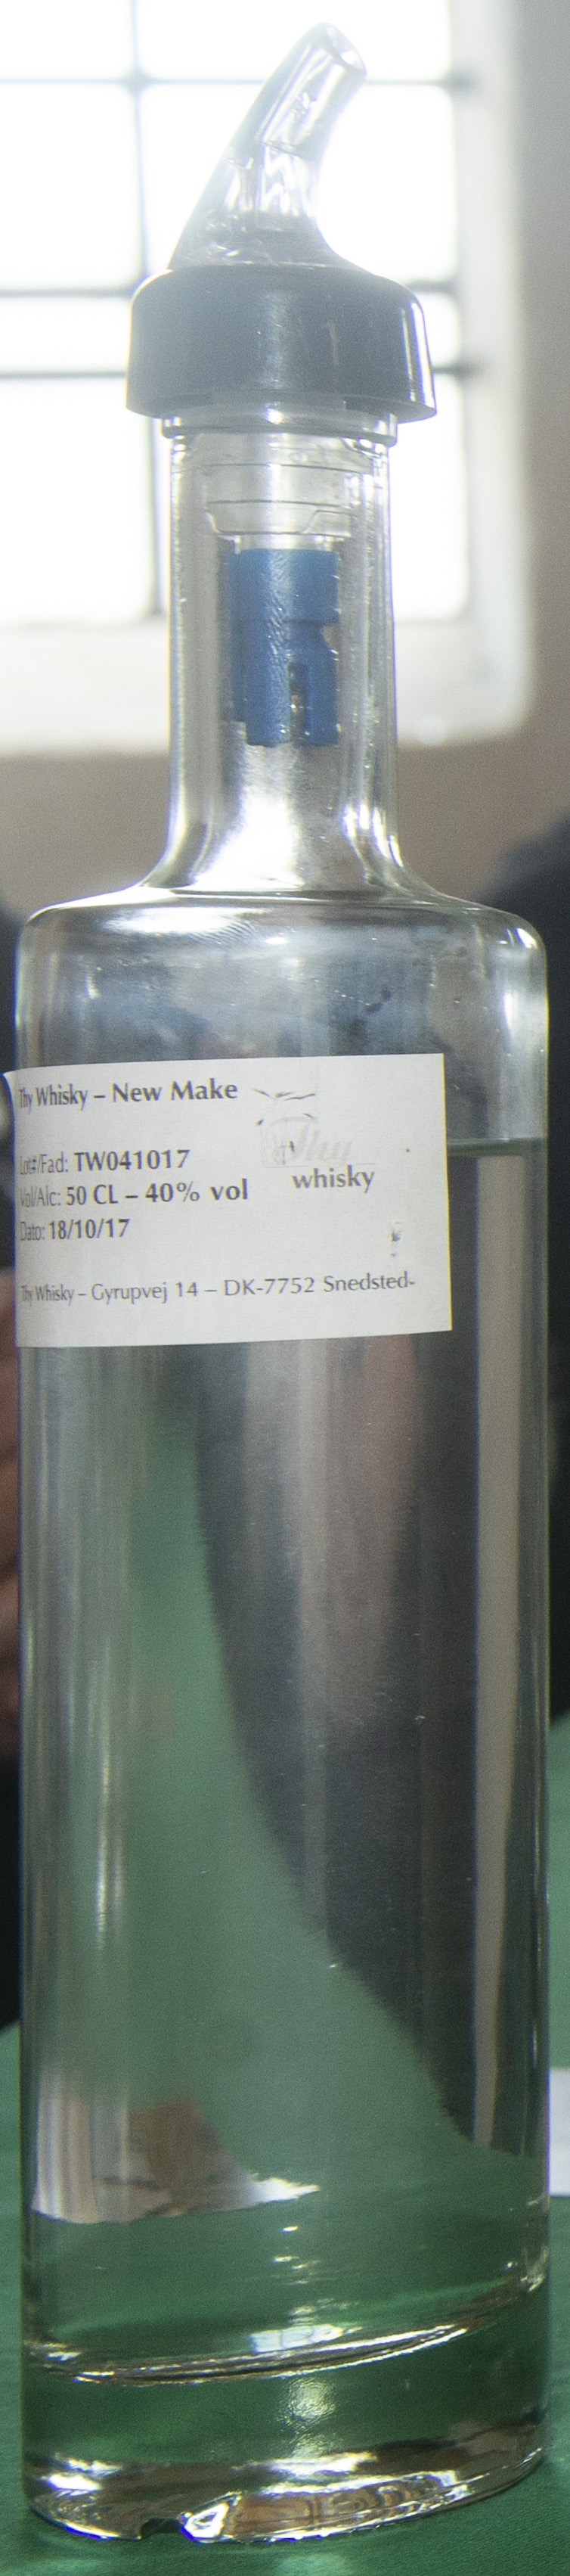 Billede: DSC_4002 - Thy Whisky - new make.jpg